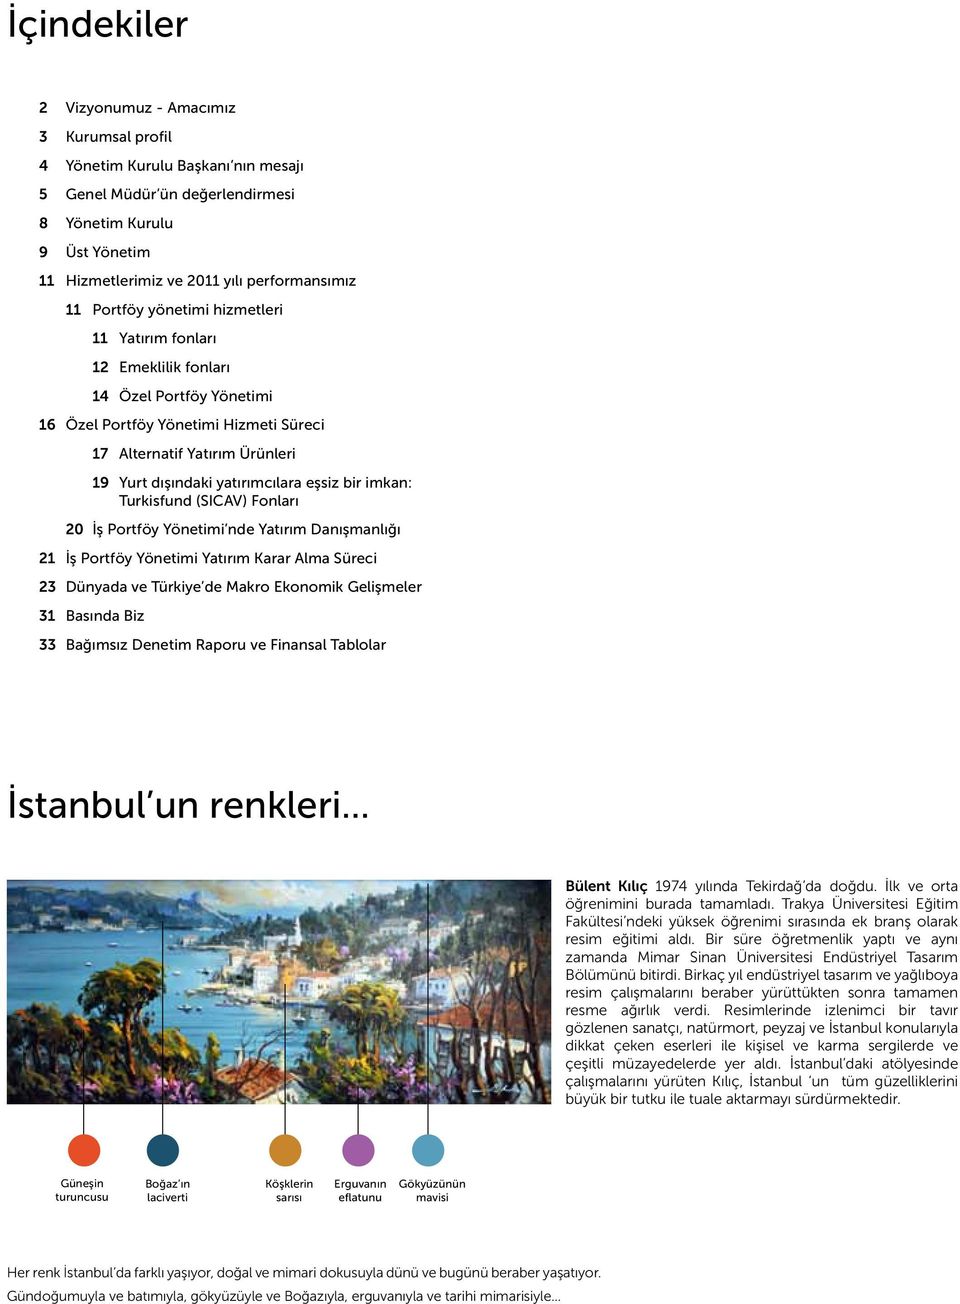 eşsiz bir imkan: Turkisfund (SICAV) Fonları 20 İş Portföy Yönetimi nde Yatırım Danışmanlığı 21 İş Portföy Yönetimi Yatırım Karar Alma Süreci 23 Dünyada ve Türkiye de Makro Ekonomik Gelişmeler 31